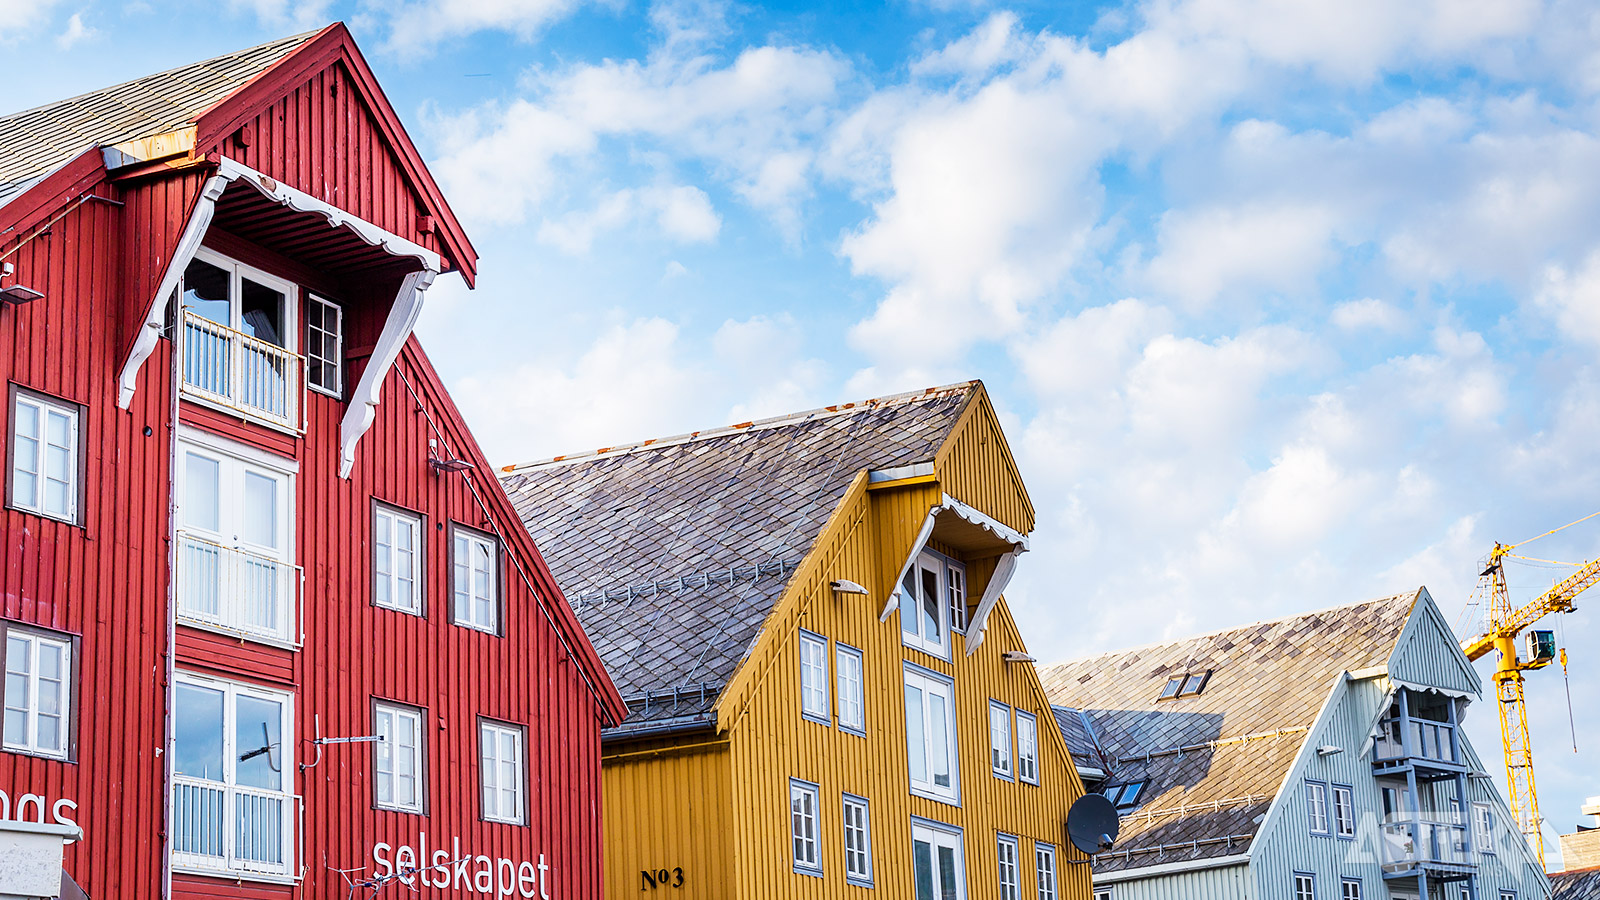 Maak een wandeling maken langs de kleurrijke houten huizen in het oude Tromsø